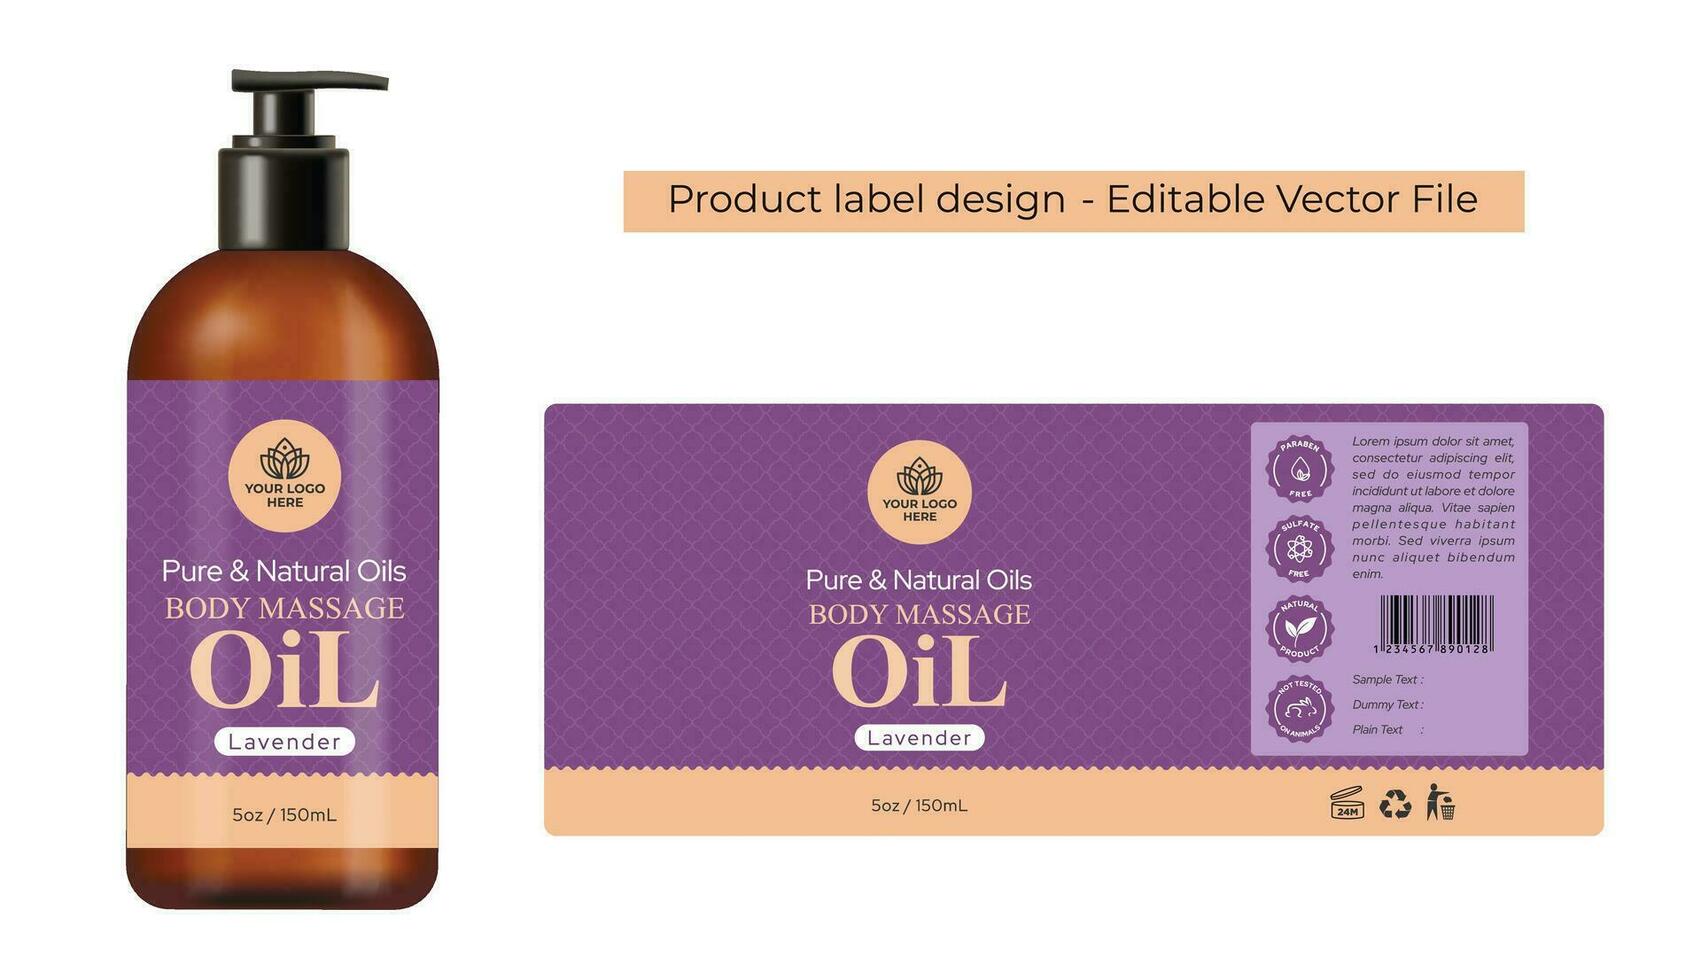 Massage Öl Etikette Design, Haar Öl Körper Öl, Spa Produkt Verpackung Design, Aromatherapie wesentlich Öl Flasche Etikette Design von das kosmetisch Produkt mit realistisch Attrappe, Lehrmodell, Simulation Illustration. vektor